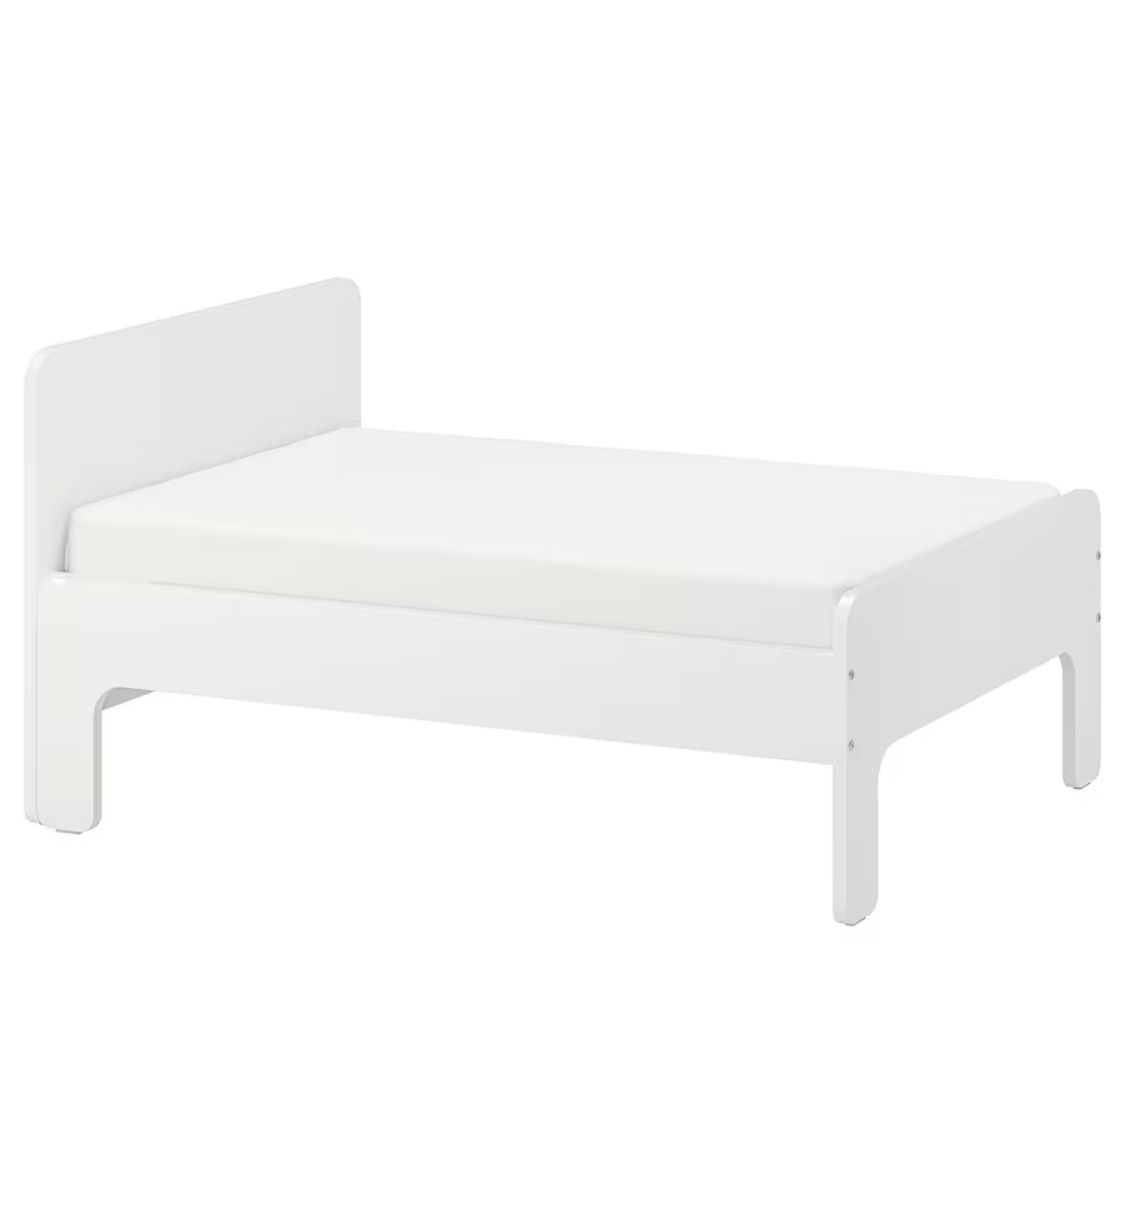 Ikea SLAKT White Extendable Kid’s Bed Frame